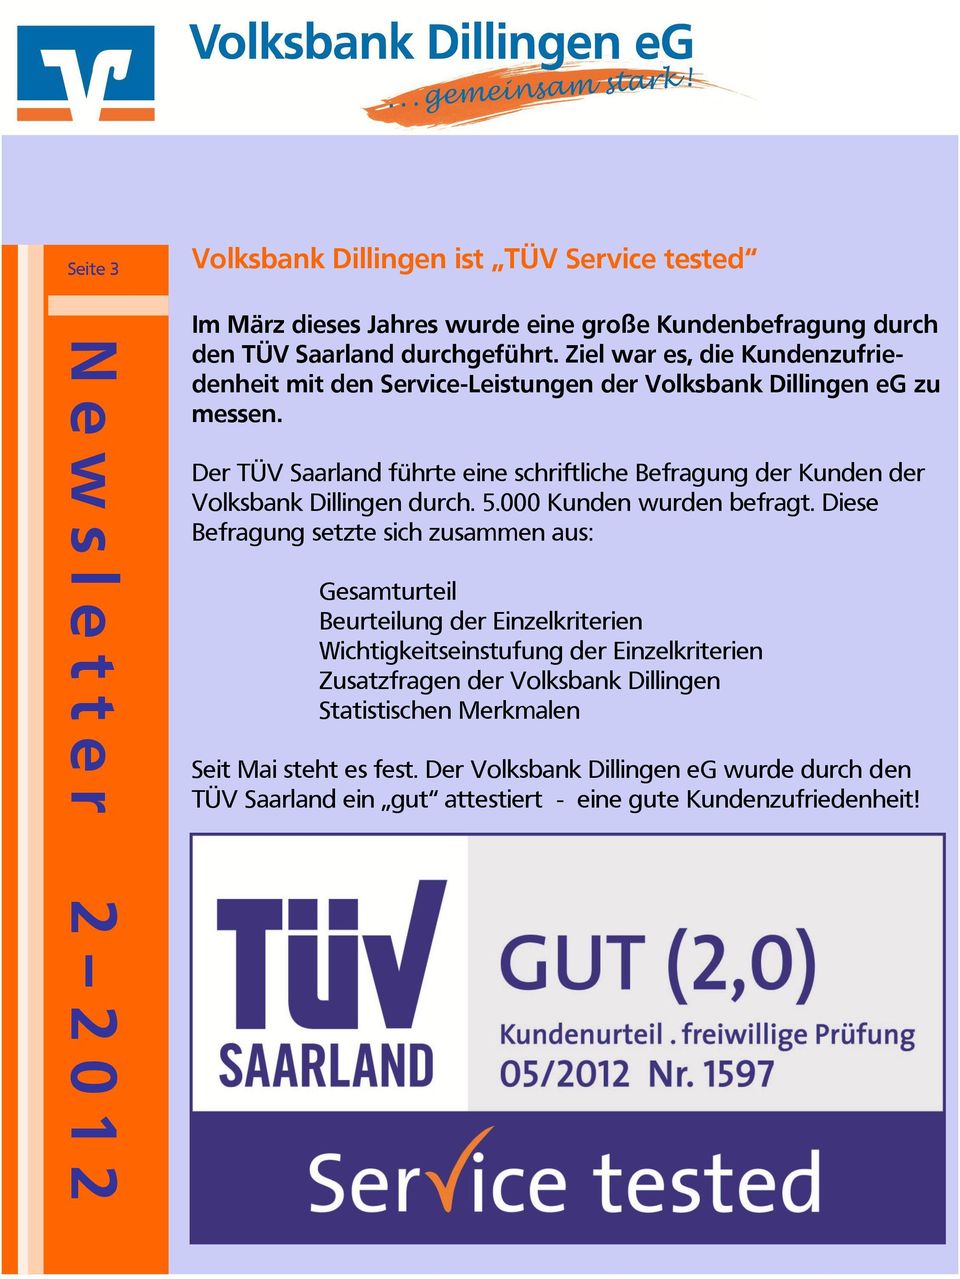 Der TÜV Saarland führte eine schriftliche Befragung der Kunden der Volksbank Dillingen durch. 5.000 Kunden wurden befragt.